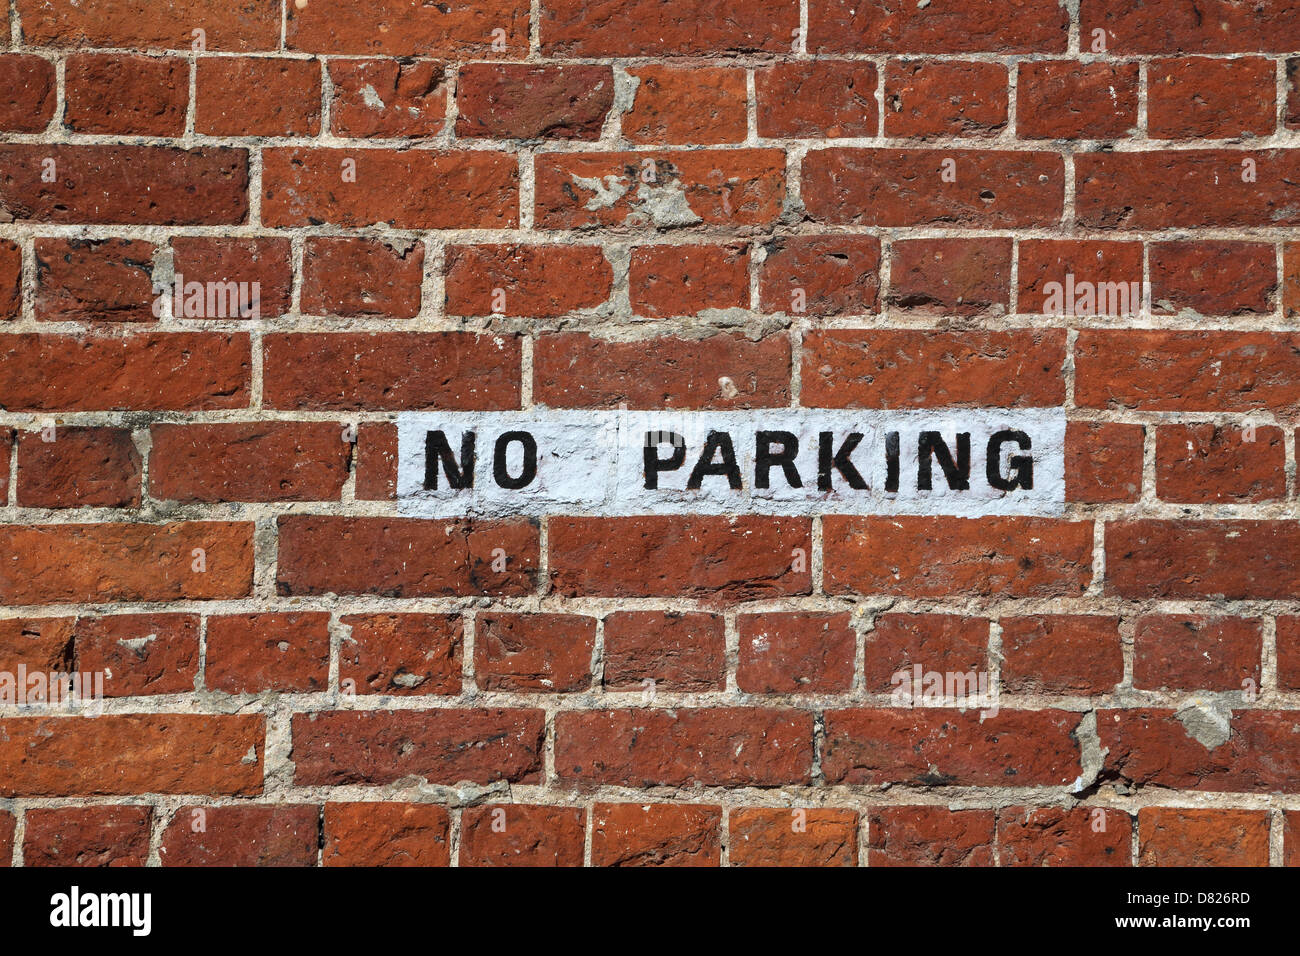 No hay señal de estacionamiento pintada sobre una pared de ladrillos Foto de stock